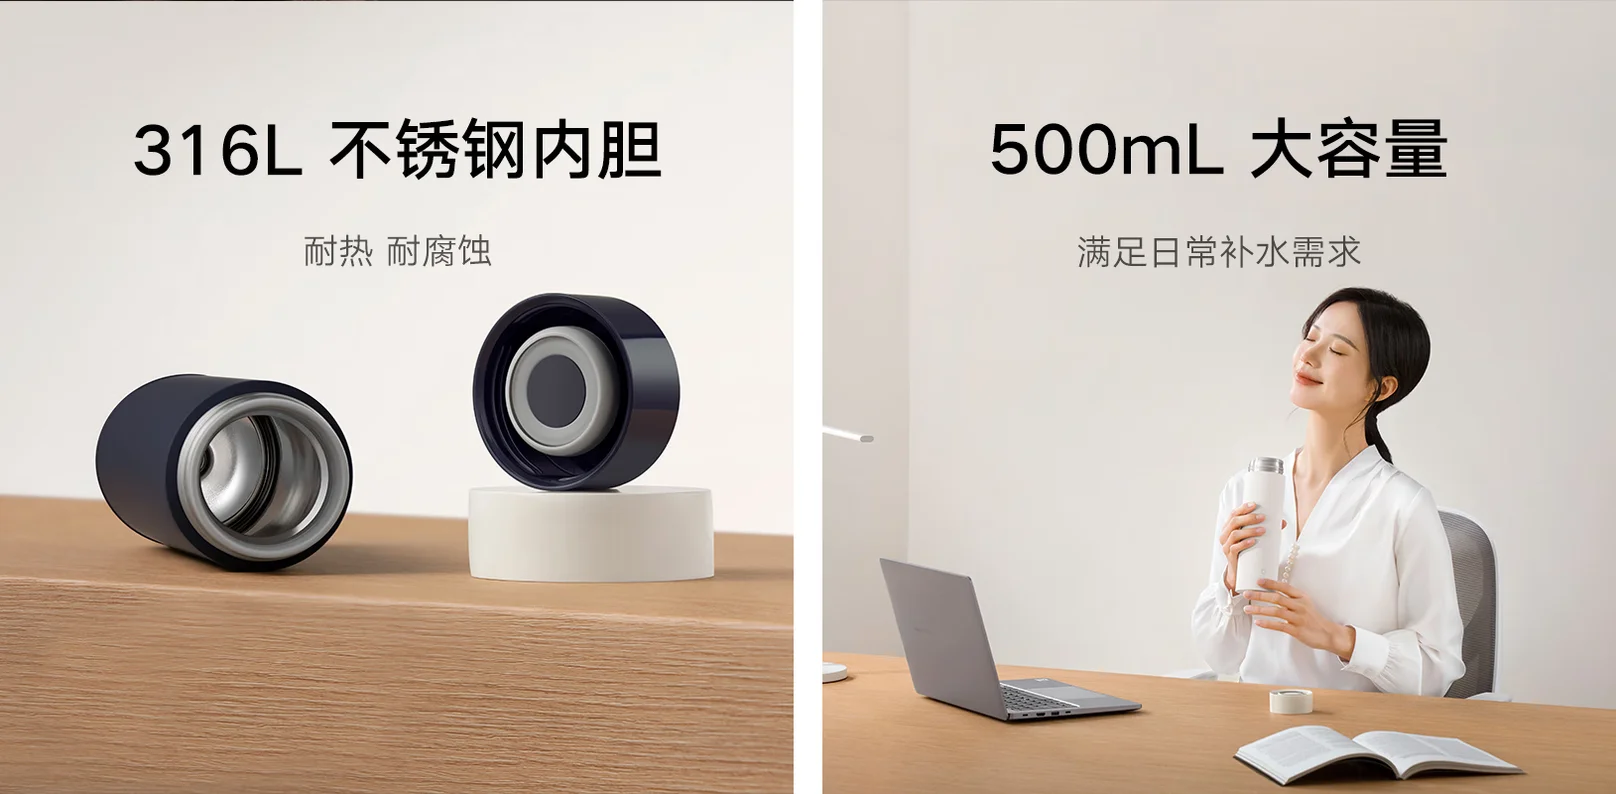 Xiaomi показал термос на 500 мл с шестичасовой выносливостью  Mijia Light Enjoy Thermal Flask